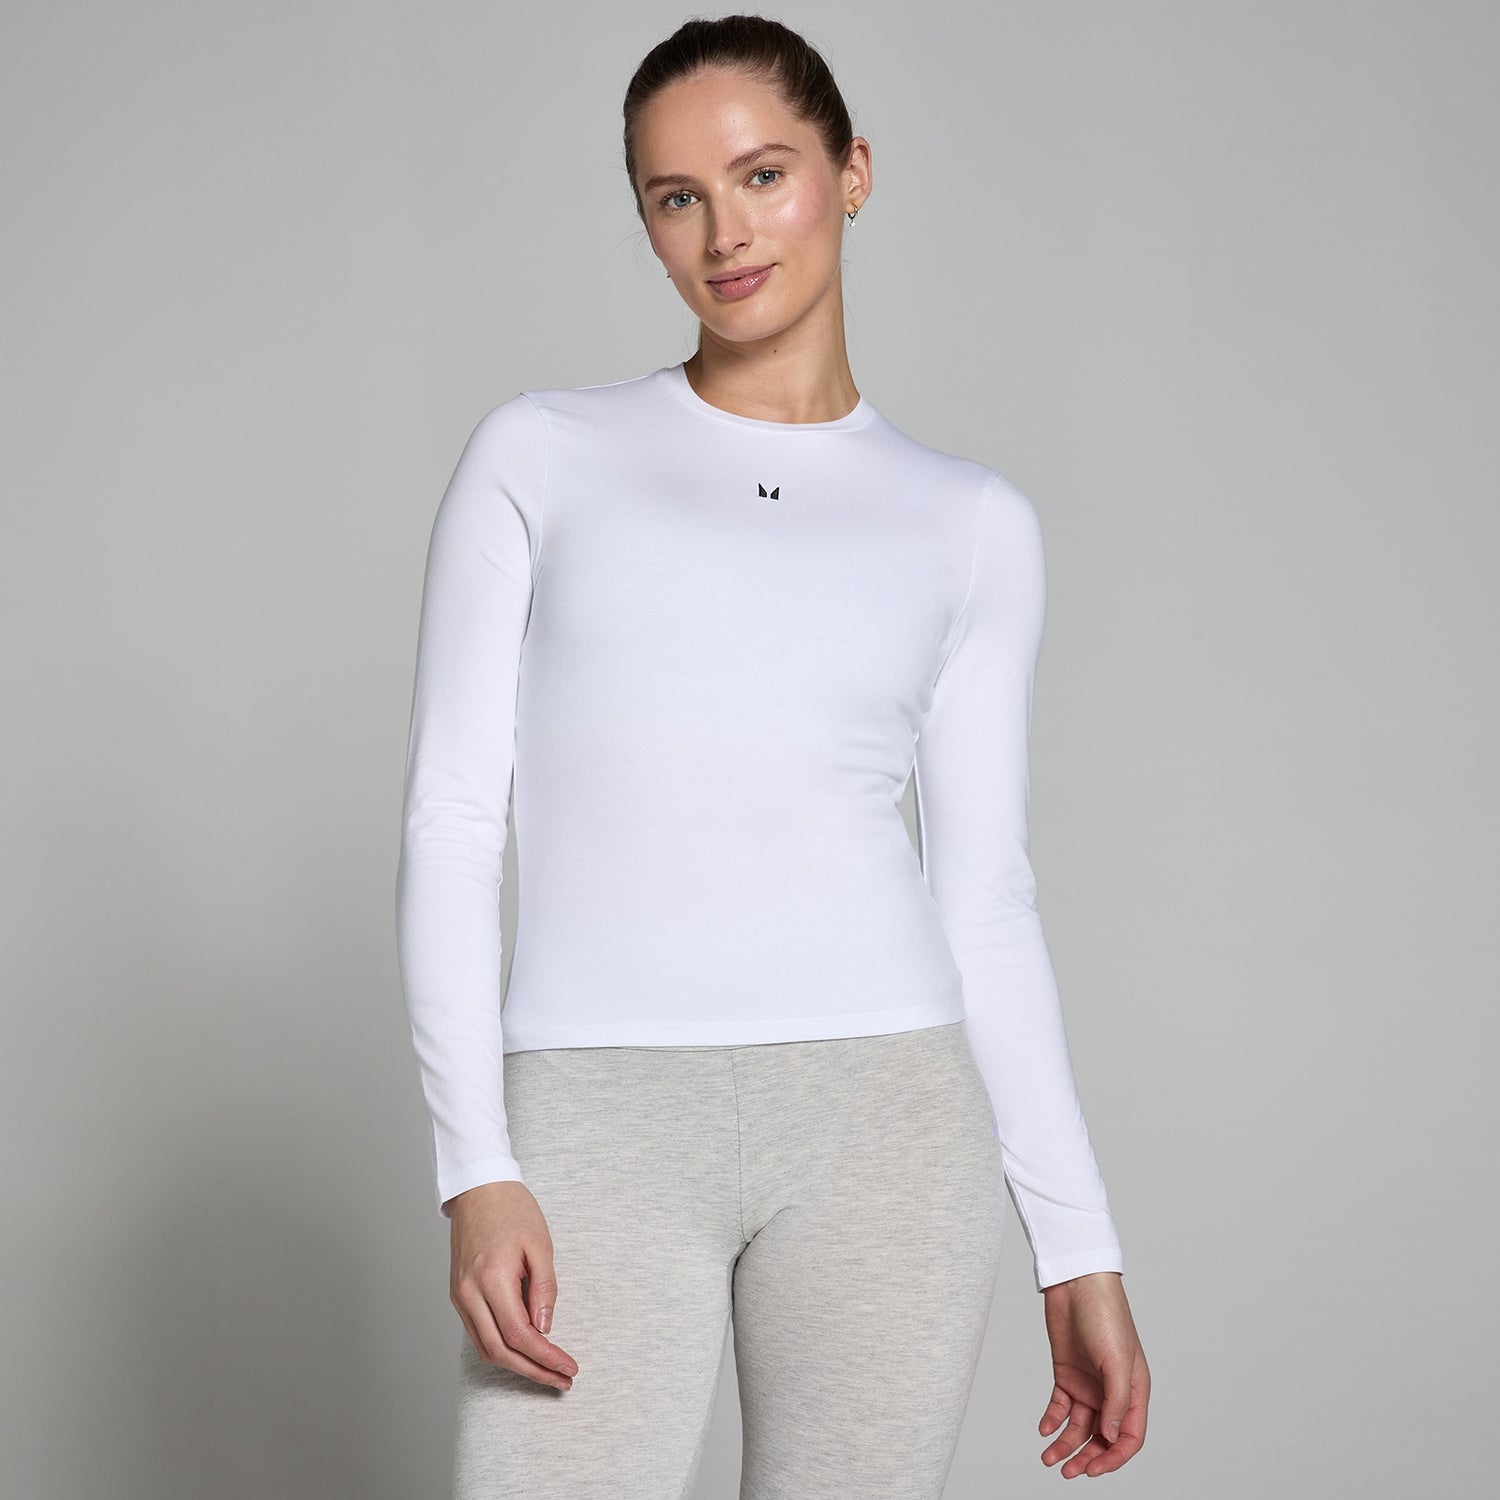 Γυναικείο Μακρυμάνικο Μπλουζάκι με Στενή Εφαρμογή MP Basics - Λευκό - XXS